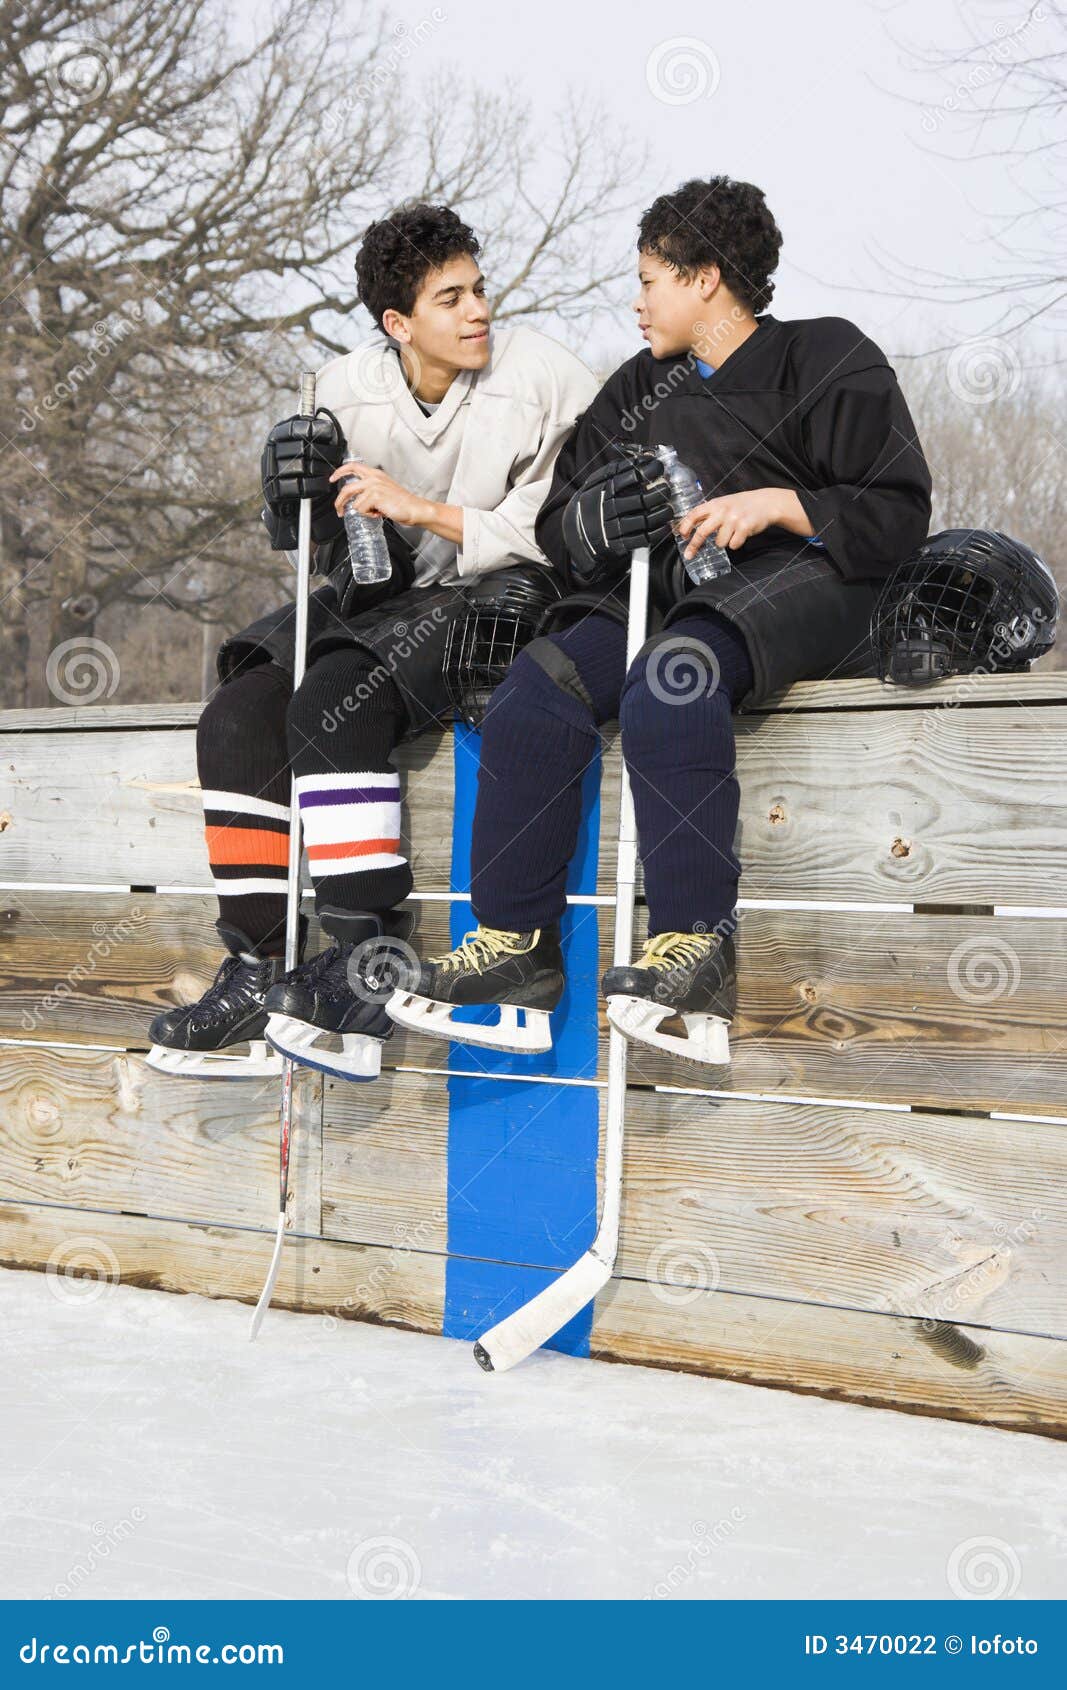 Hockeyisspelare. Isbanan för is för pojkeeachotherhockey tar ur spel sittande samtal till två likformig